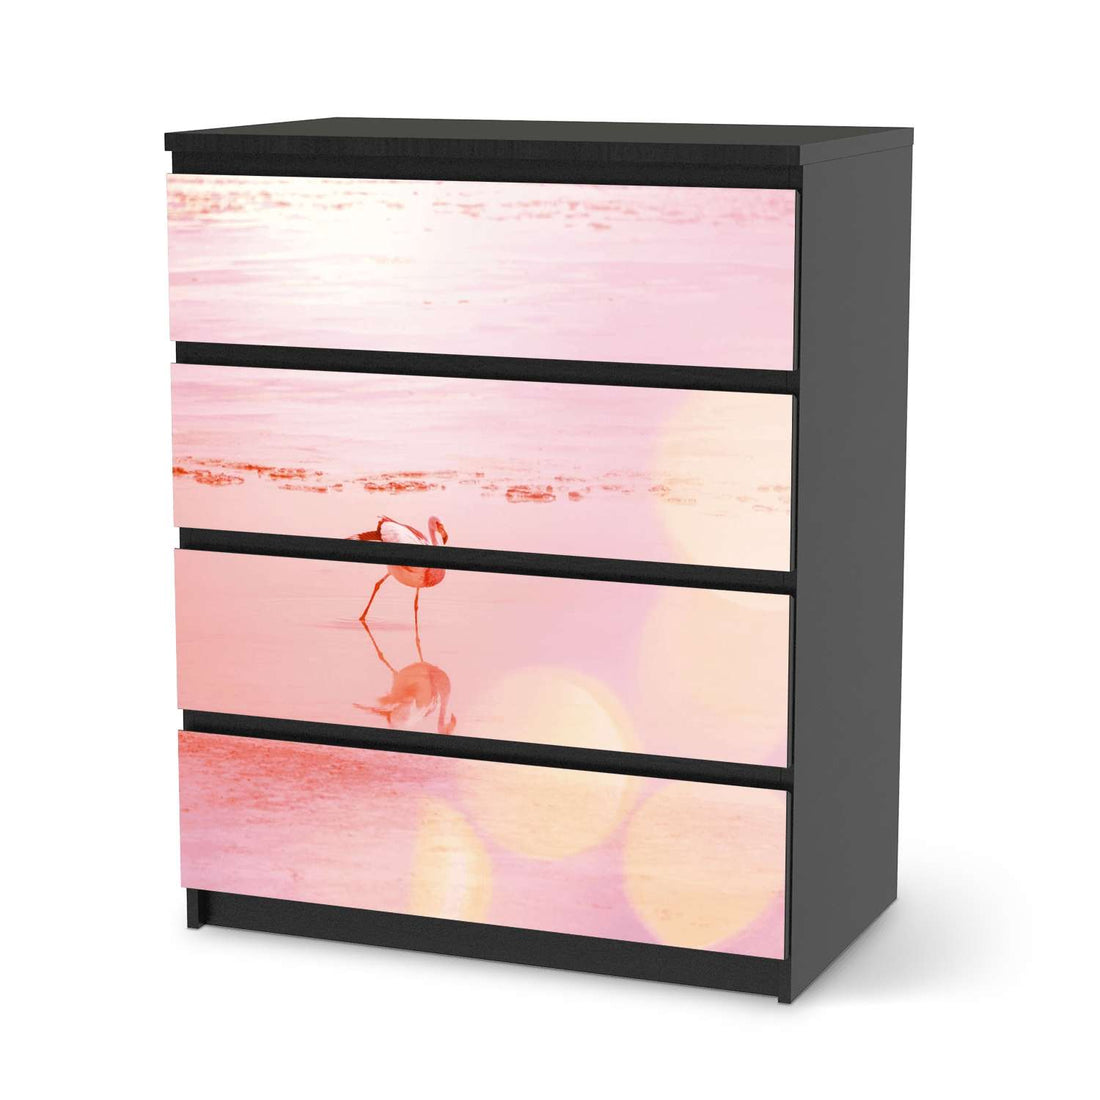 Folie für Möbel Mr. Flamingo - IKEA Malm Kommode 4 Schubladen - schwarz